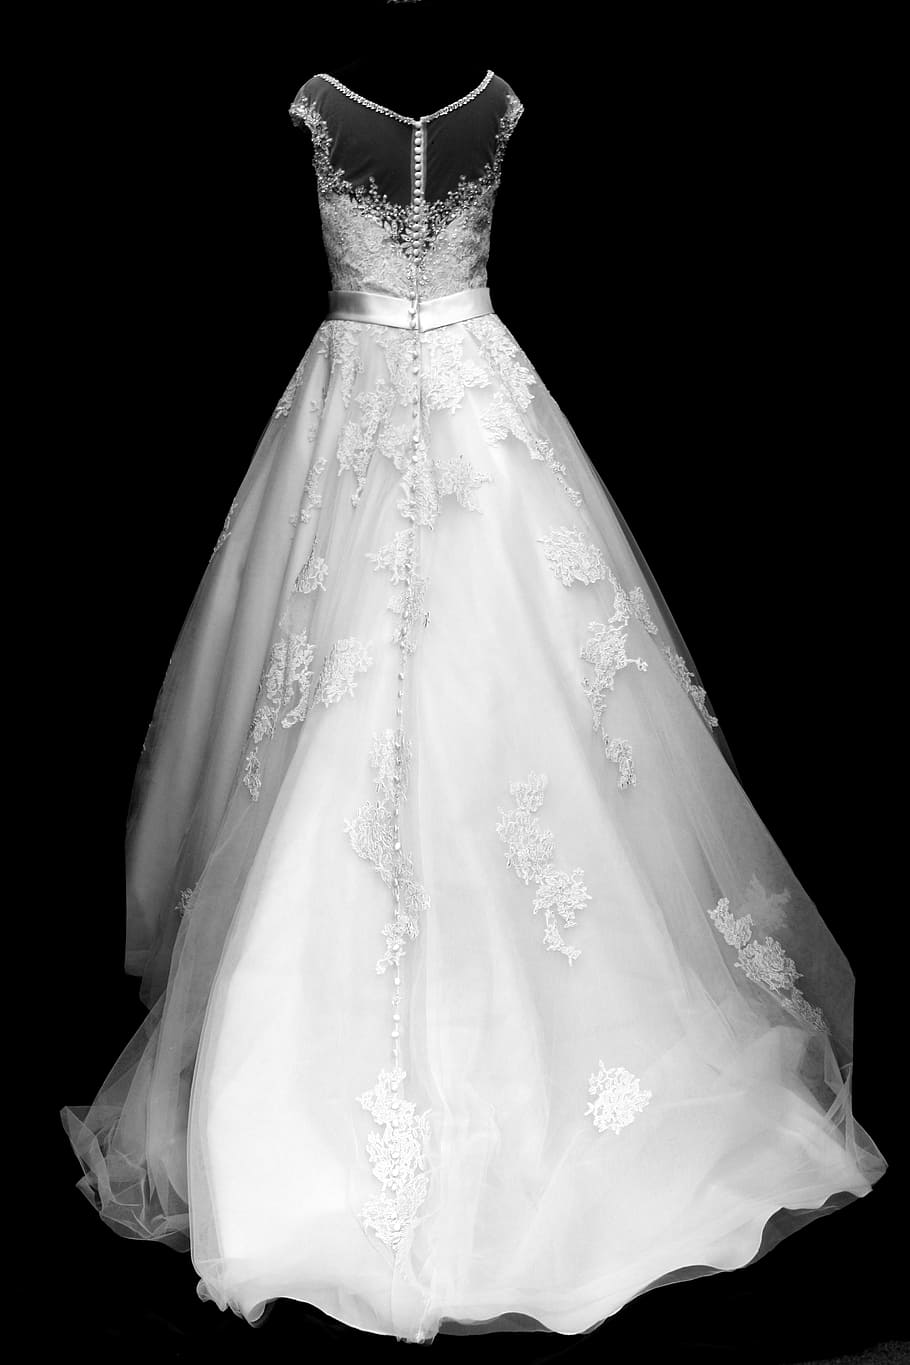 Một chiếc váy cưới trắng không tay đầy sáng tạo trên nền đen thật thời trang và độc đáo, nhưng vẫn rất phù hợp để biến mình thành một cô dâu thật xinh đẹp. Hãy xem hình ảnh này để được cảm nhận sự sang trọng và tươi sáng của chiếc váy này.